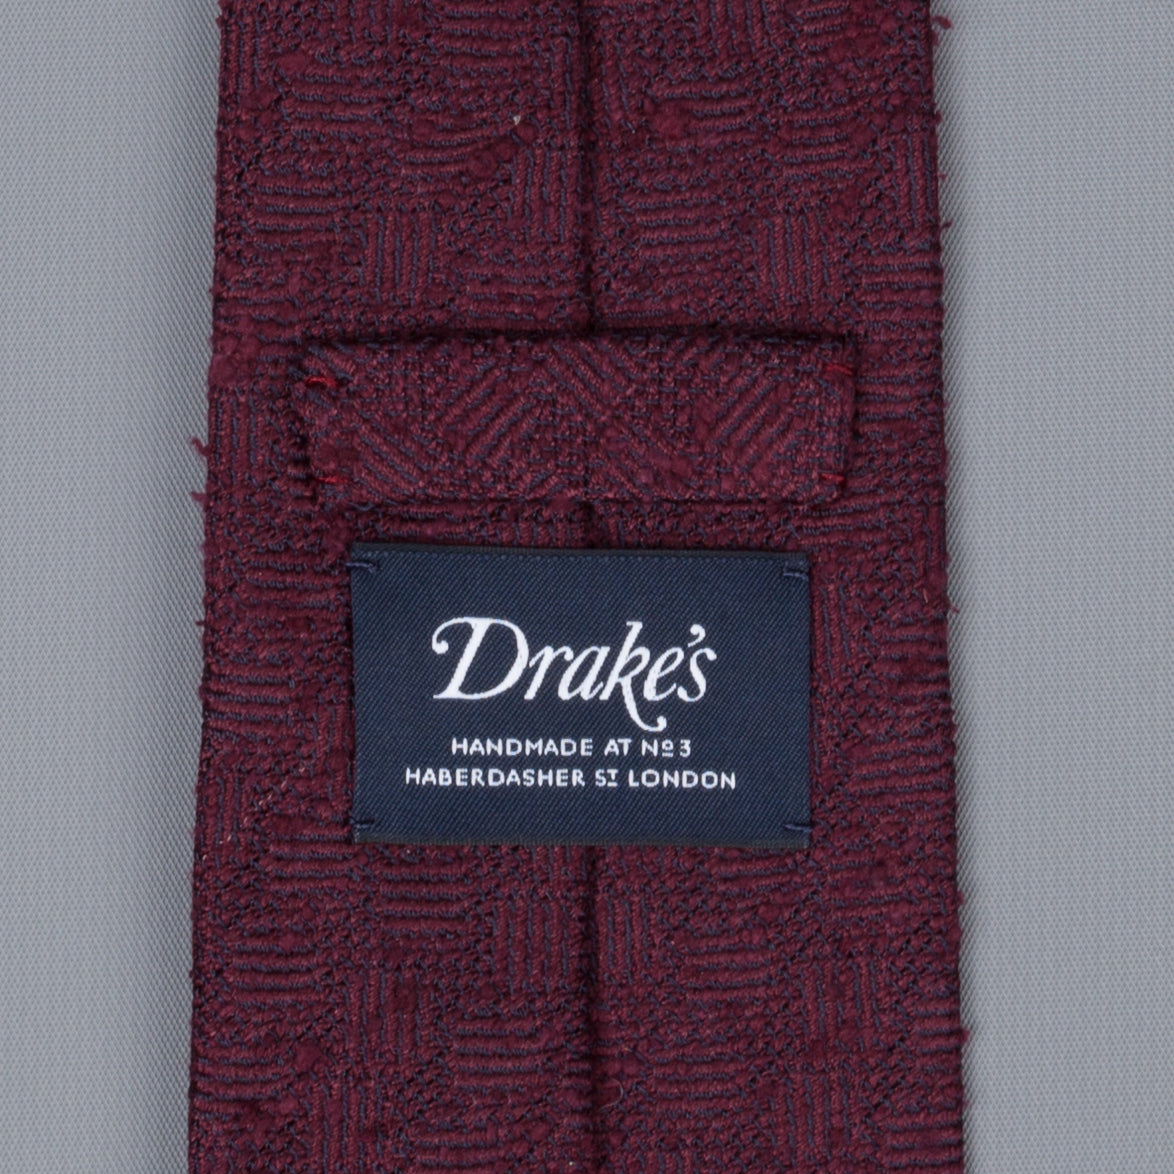 Drakes untipped basketweave tie in shantung silk burgundy